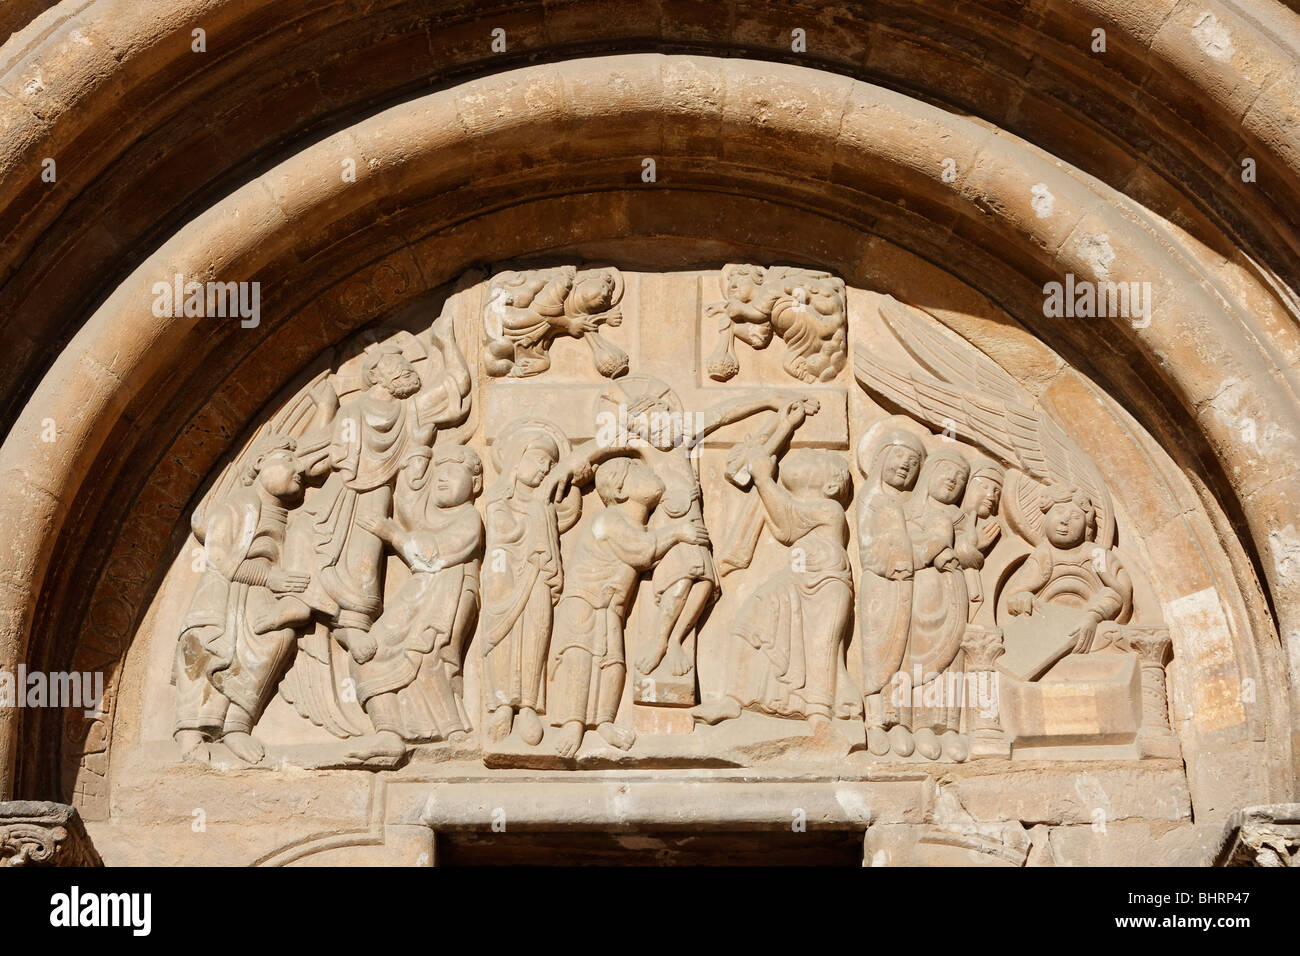 La porte romane pardon 'Puerta del Perdón' de la Basilique St Isidoro dans la ville de León Banque D'Images